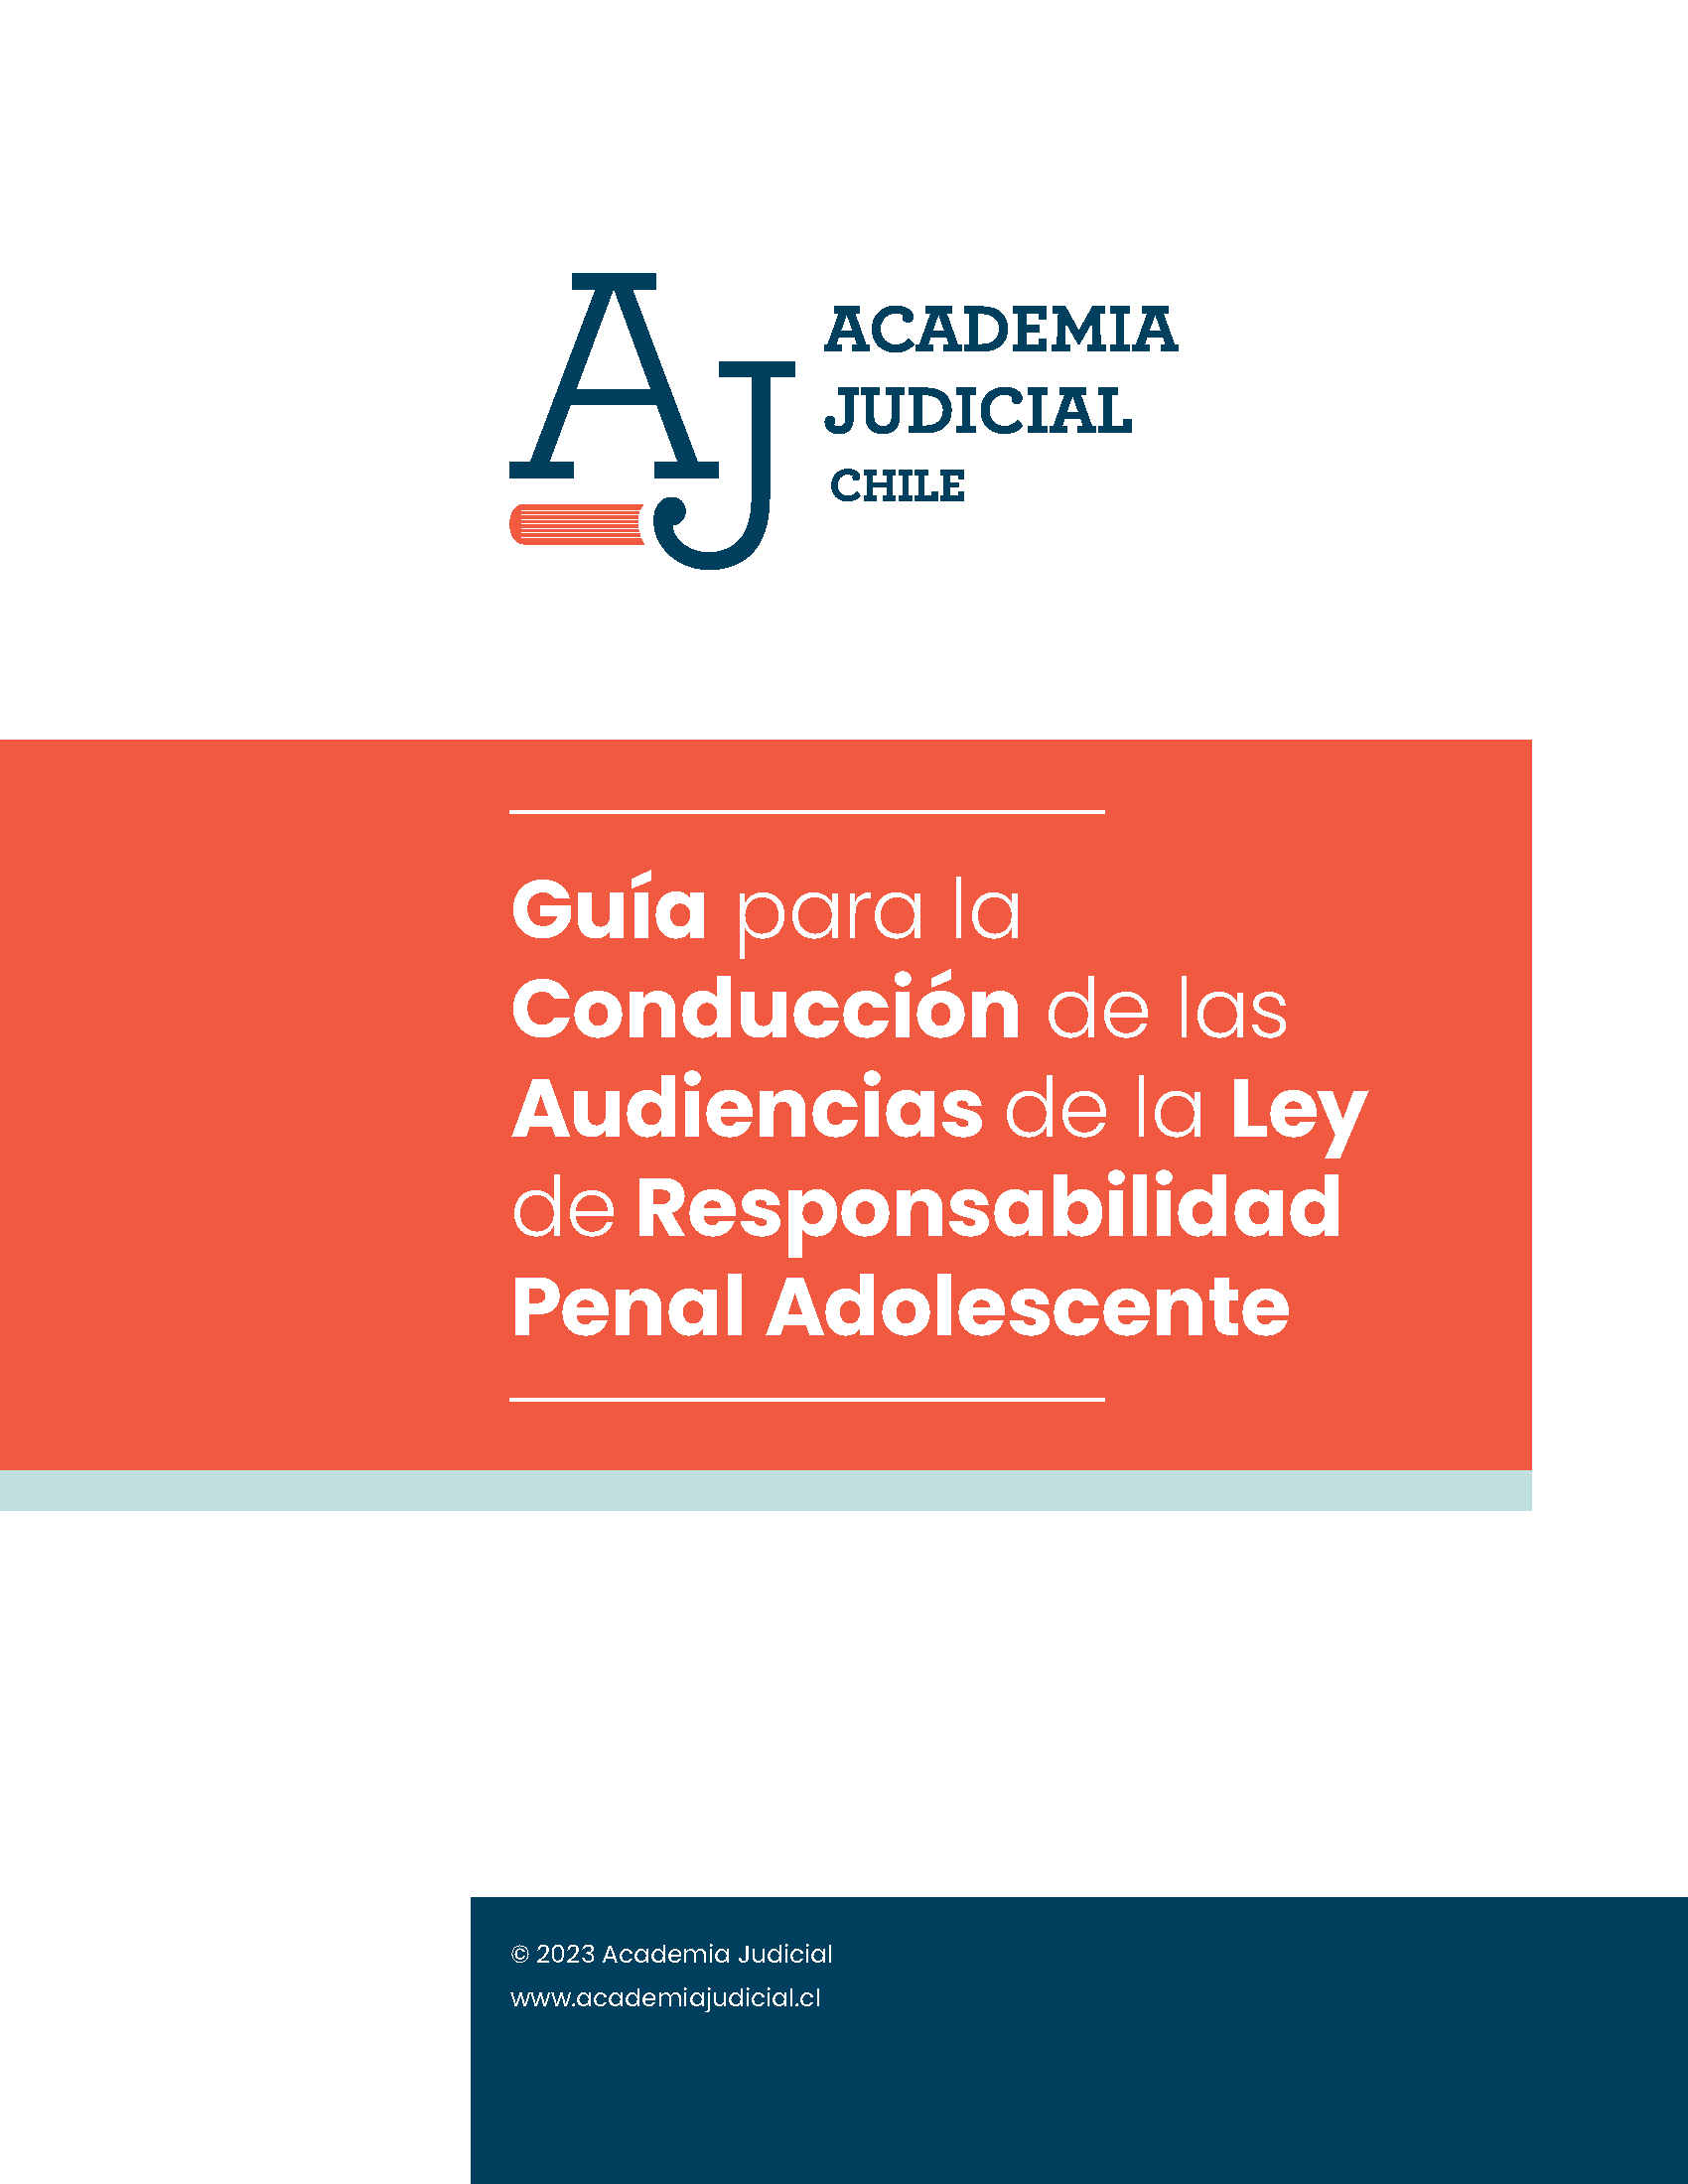 Guía para la conducción de las audiencias de la Ley de Responsabilidad Penal Adolescente. En elaboración.